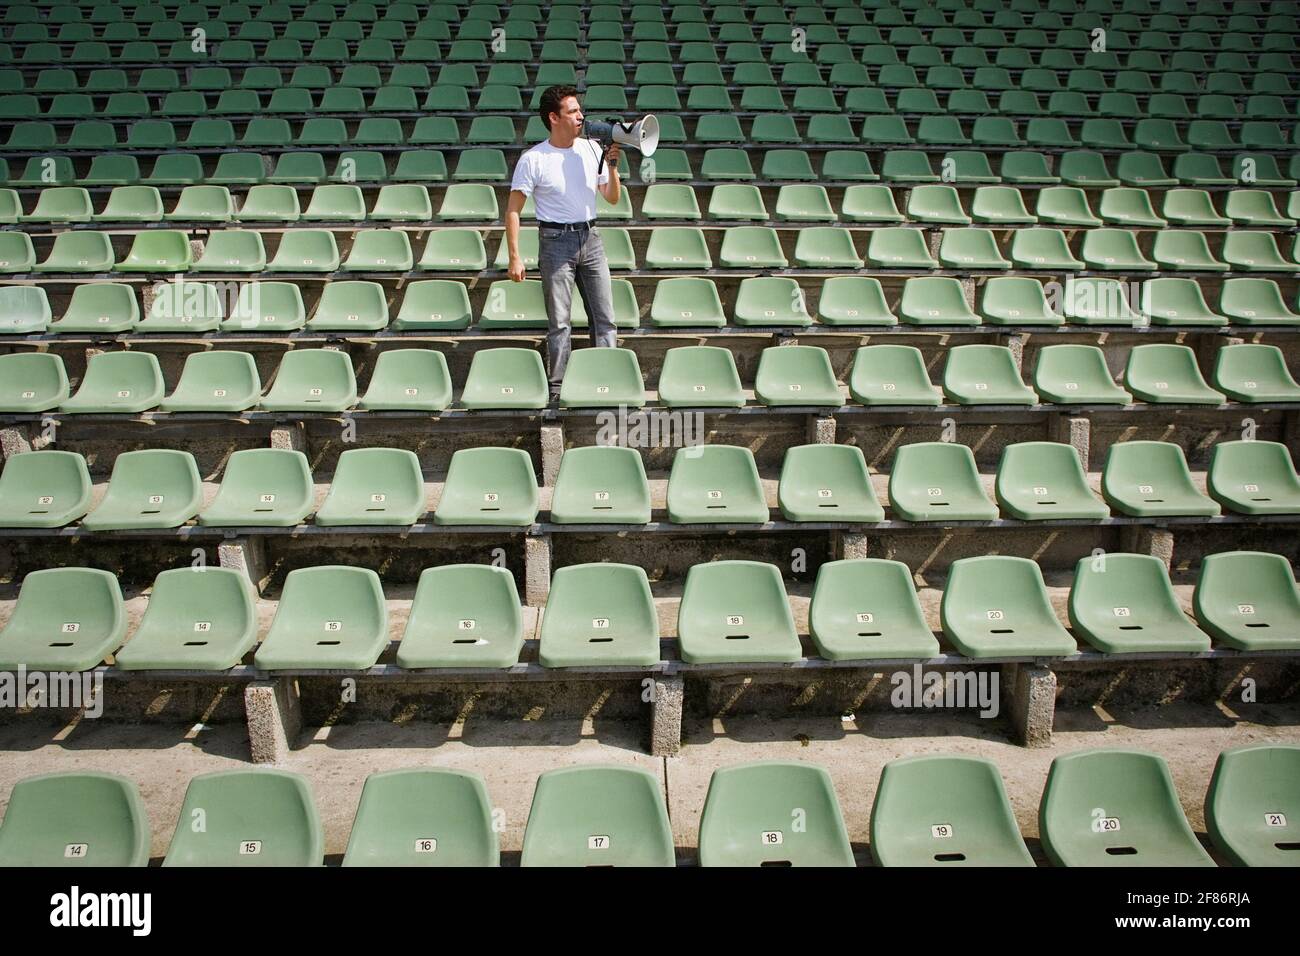 Mann mit Bullhorn im Stadion mit grünen Sitzen Stockfoto